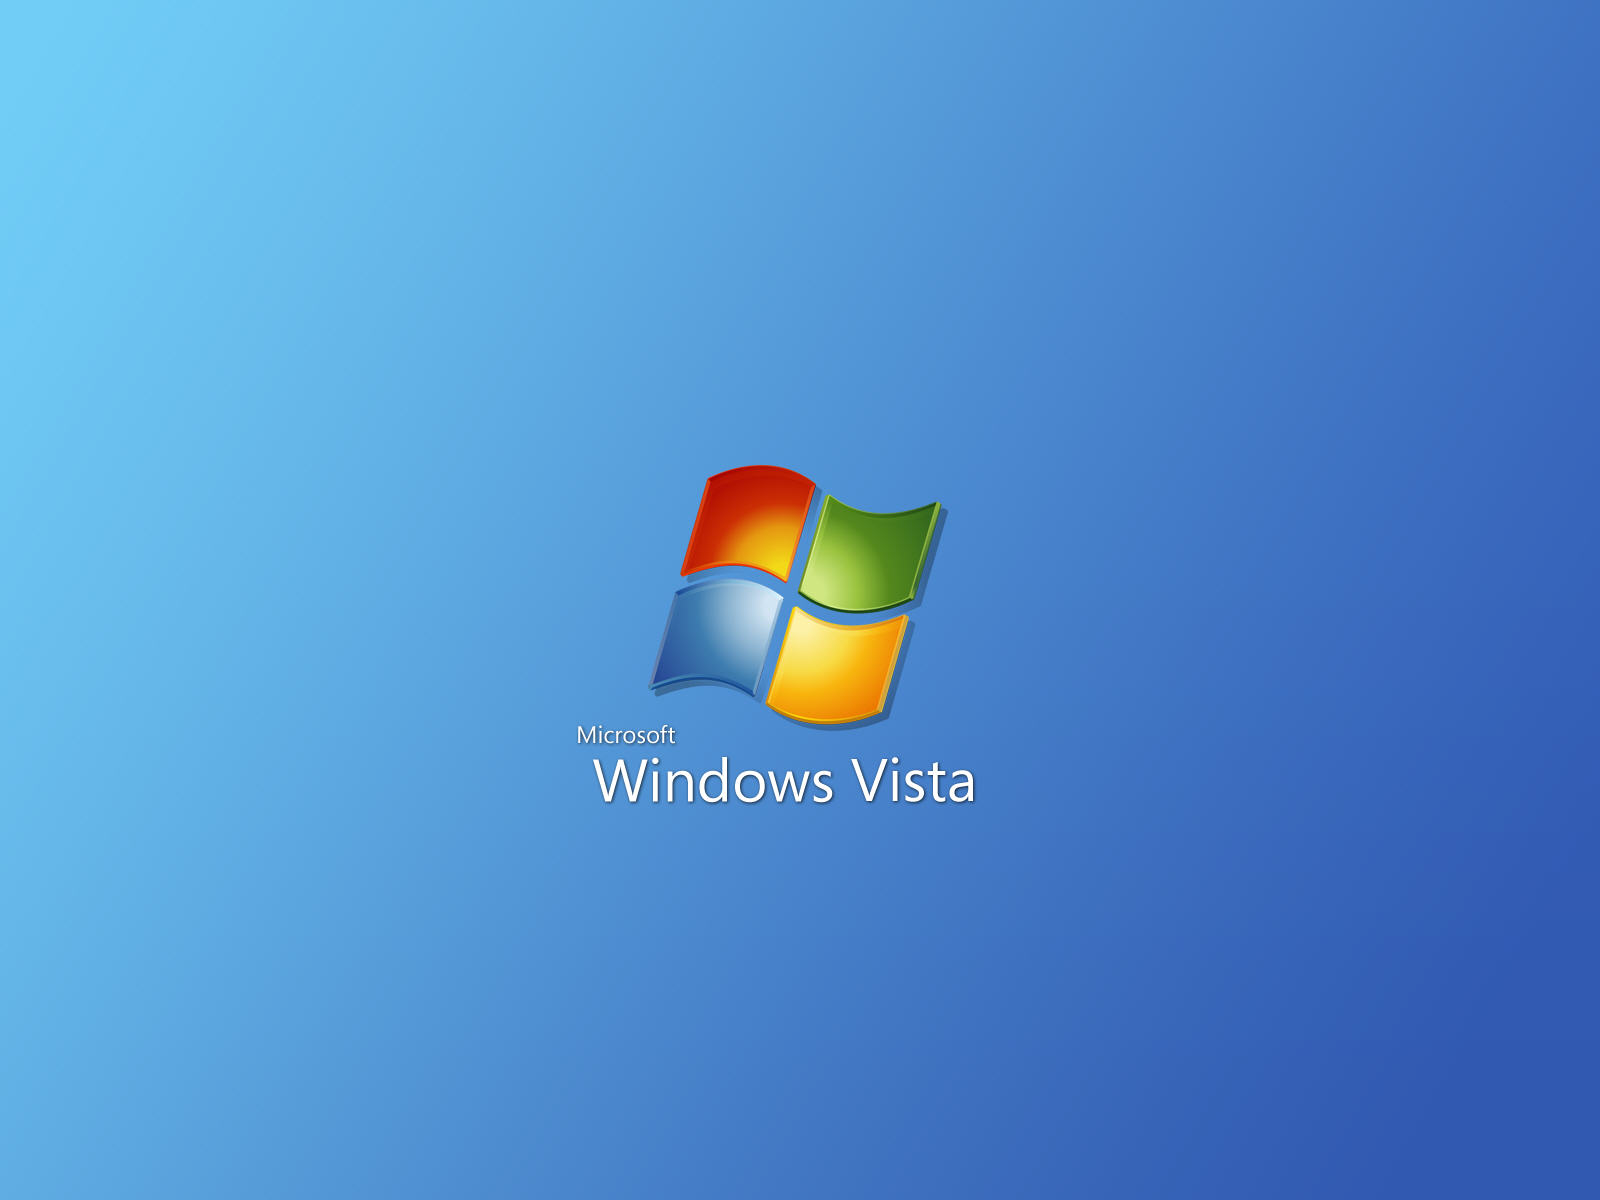 壁纸1600x1200Windows Vista精美壁纸合集壁纸 Windows Vista精美壁纸合集壁纸 Windows Vista精美壁纸合集图片 Windows Vista精美壁纸合集素材 创意壁纸 创意图库 创意图片素材桌面壁纸